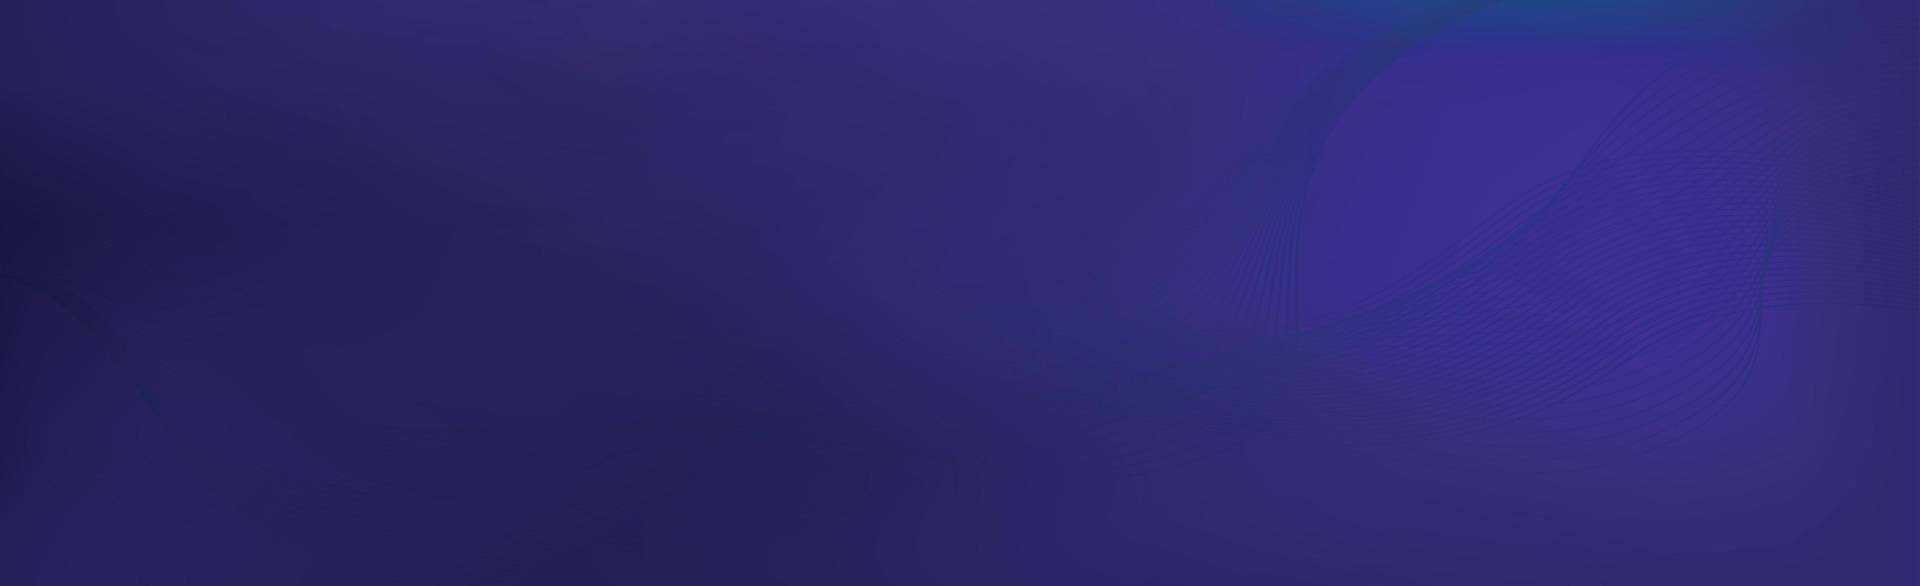 panorama- blå lila mörk abstrakt eleganta mång bakgrund med vågig rader - vektor